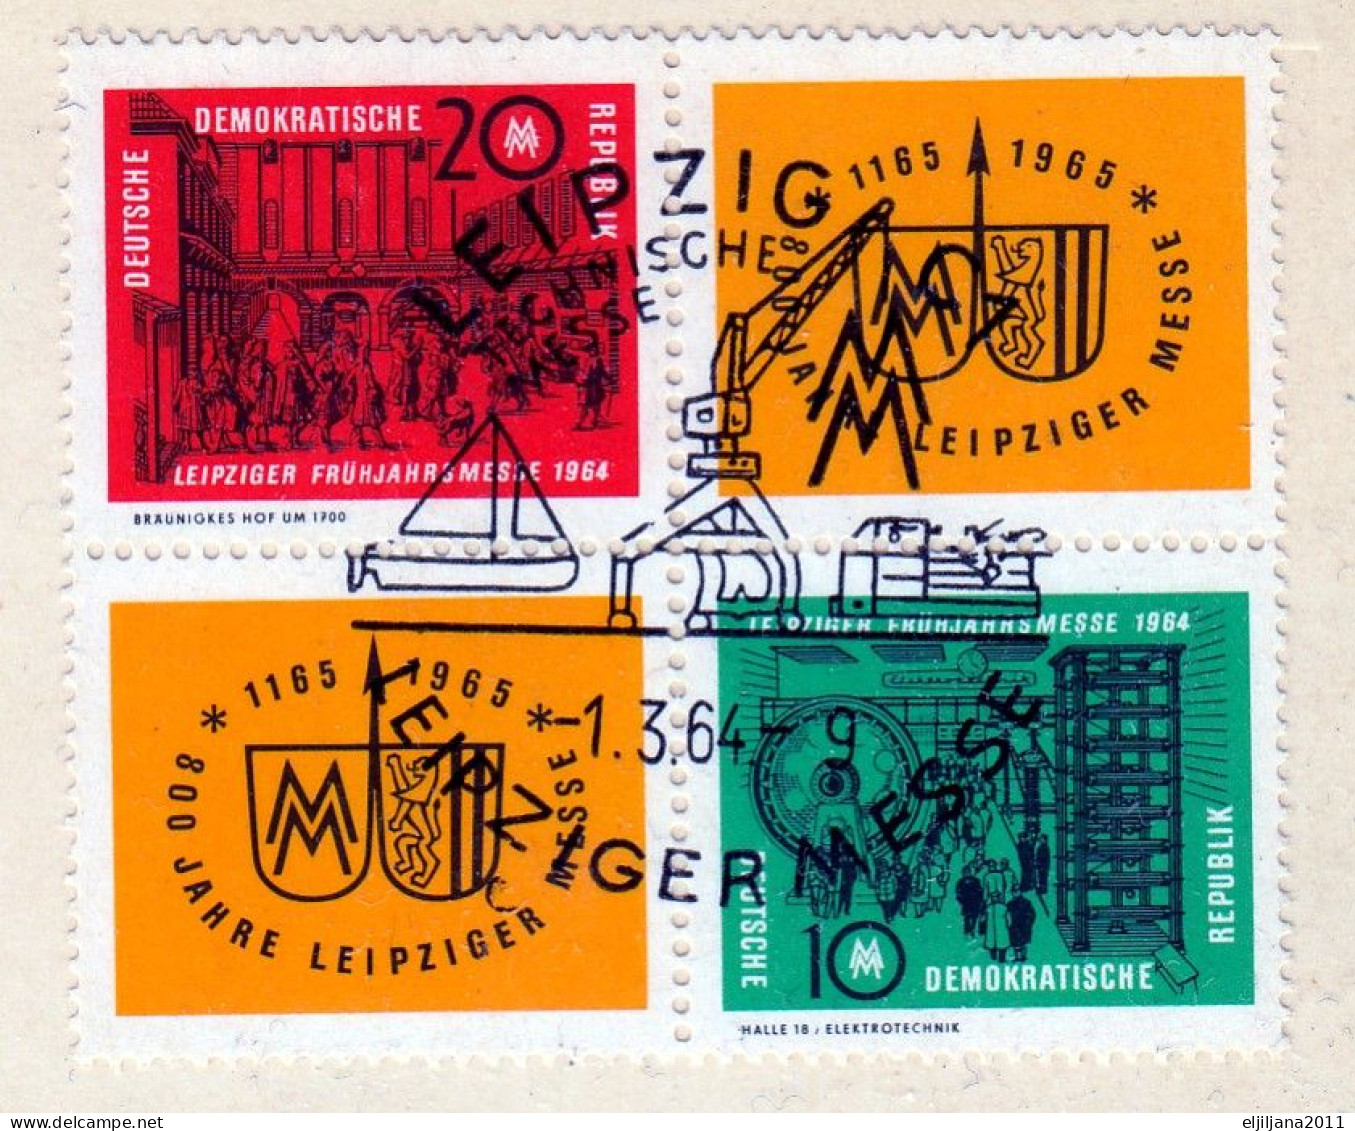 SALE !! 50 % OFF !! ⁕ Germany DDR 1964 ⁕ Leipzig, Spring Fair Mi.1012/1013 ⁕ FDC Postcard - Postkarten - Gebraucht